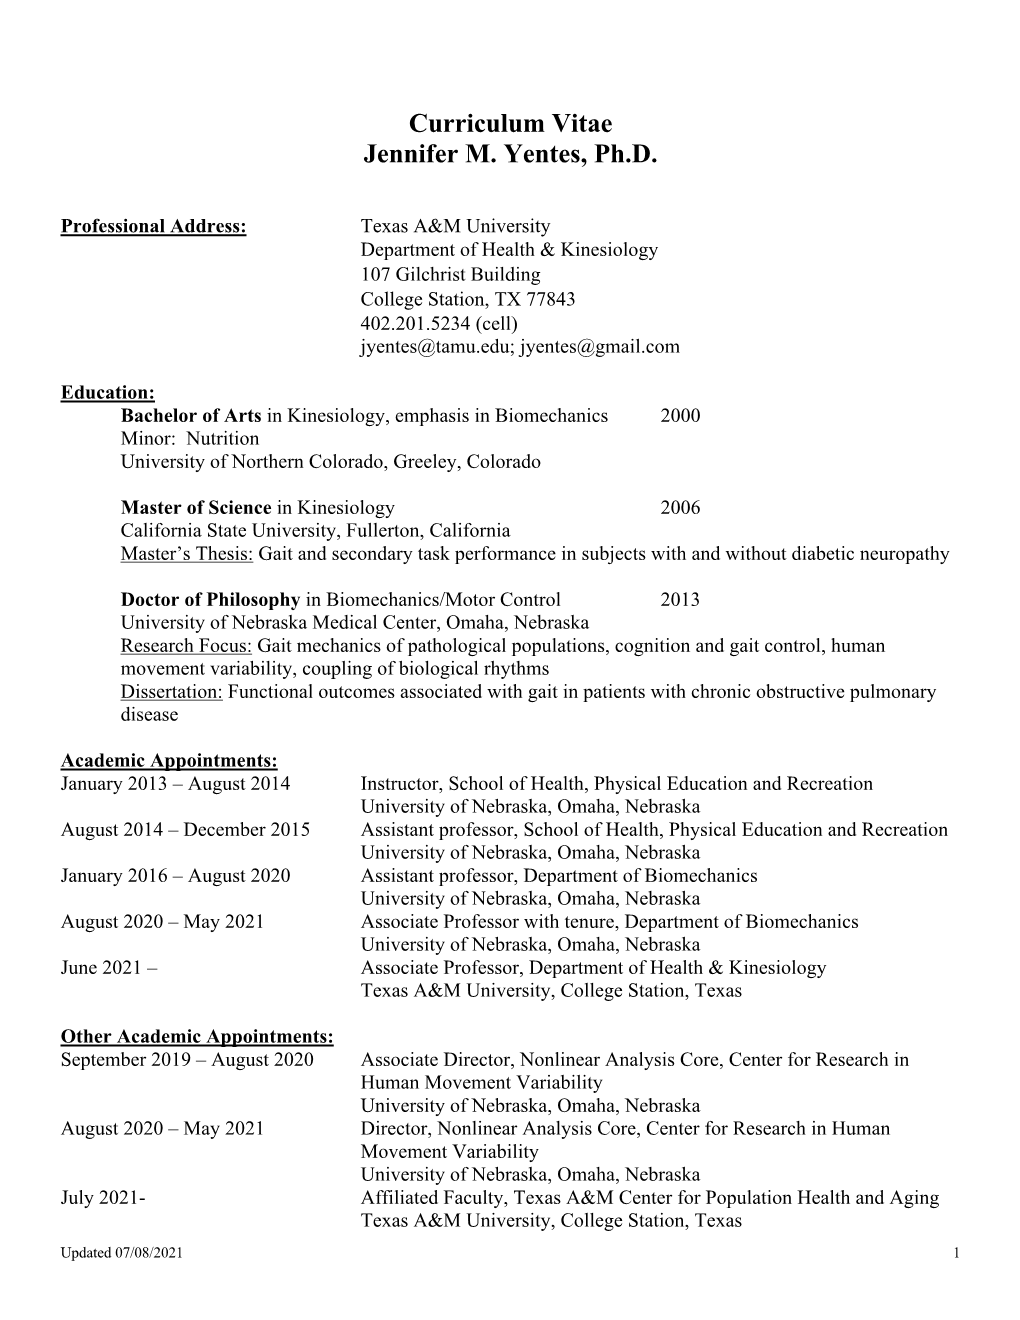 Curriculum Vitae Jennifer M. Yentes, Ph.D